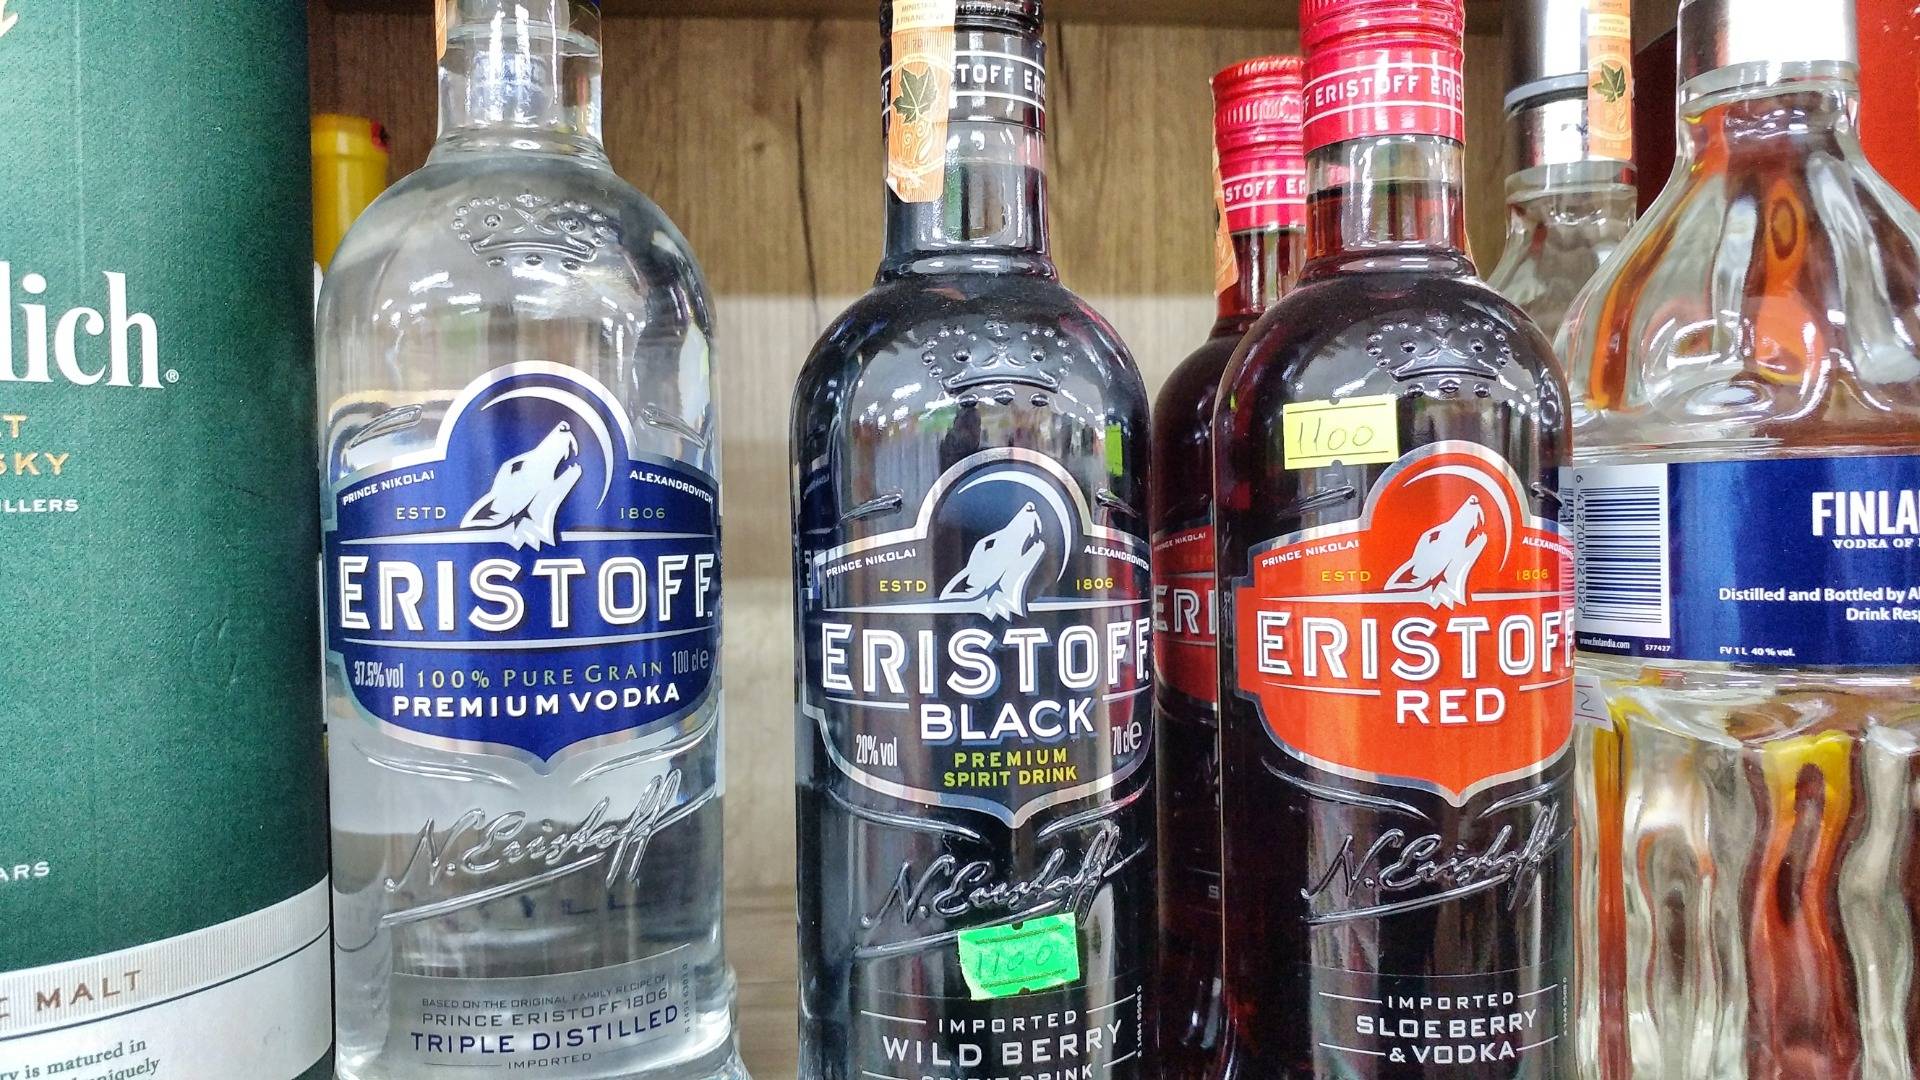 On Albania they made their own Eristoff vodka